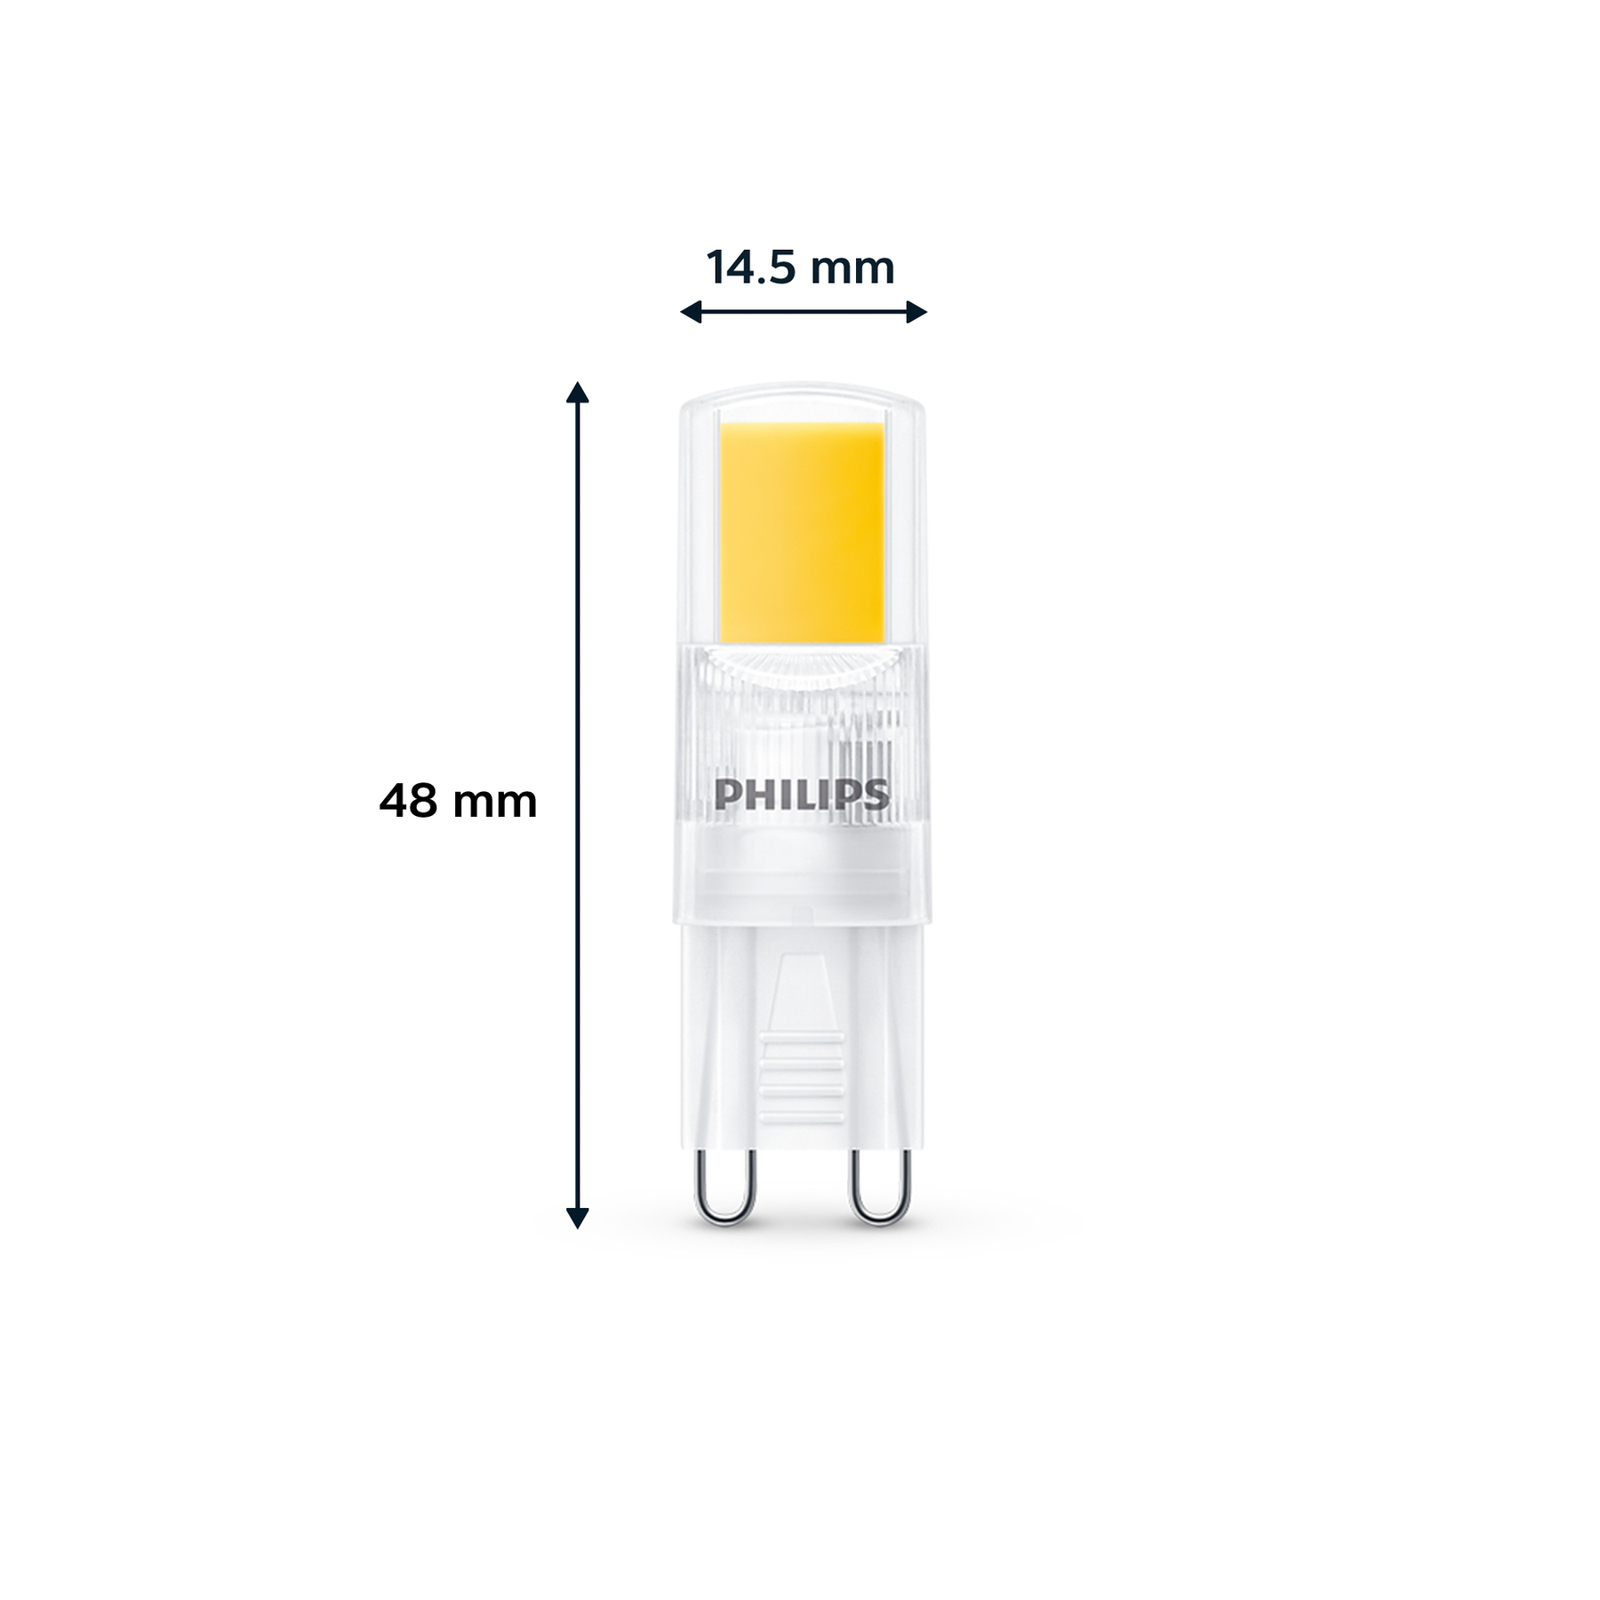 Philips LED žiarovka G9 2W 220lm 2 700 K číra 3 ks